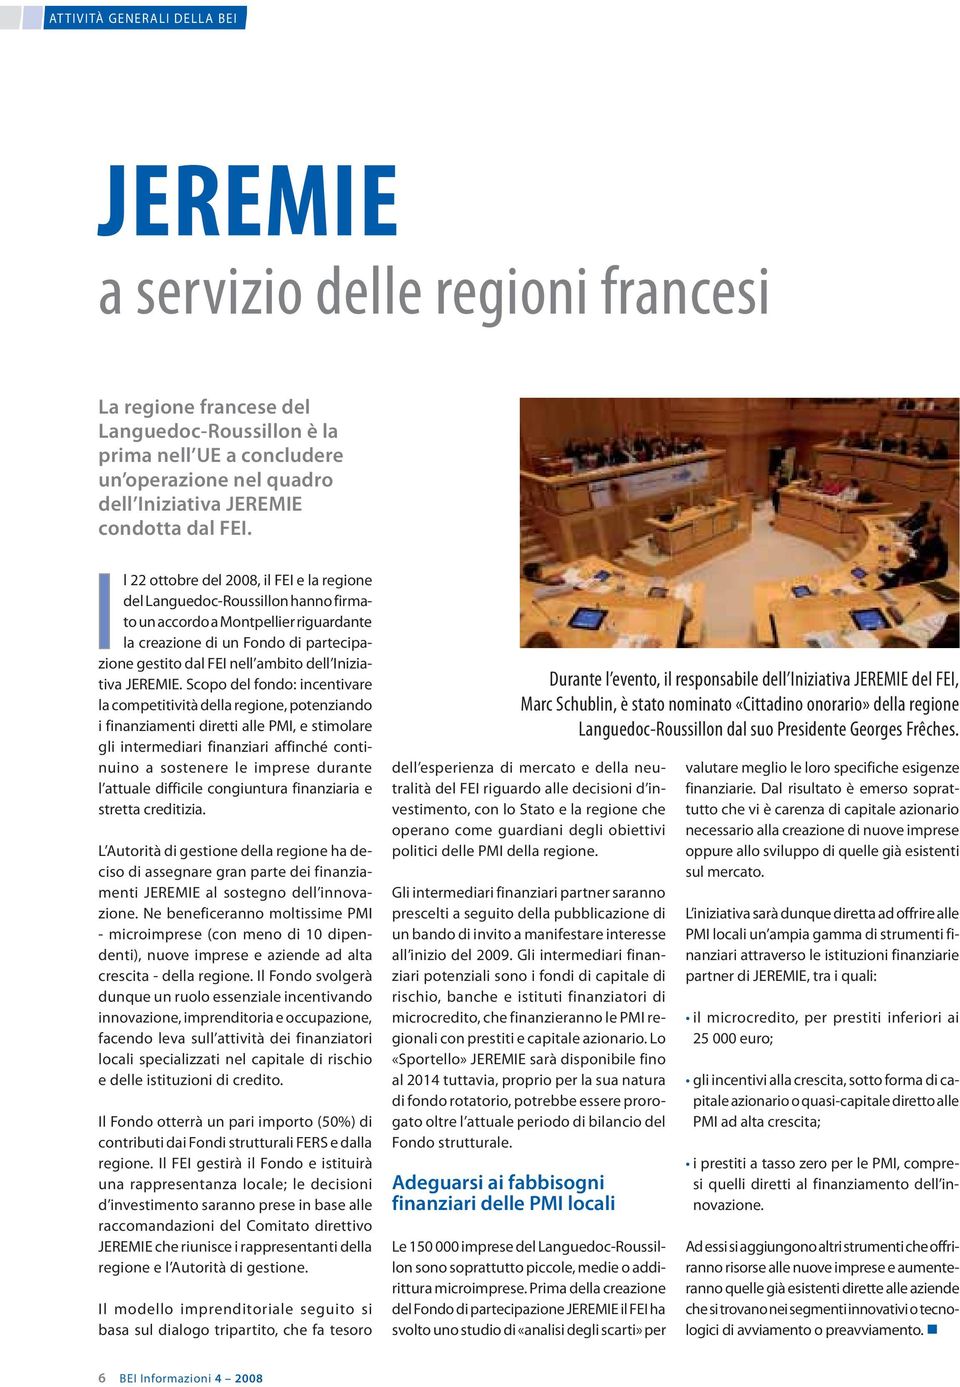 Il 22 ottobre del 2008, il FEI e la regione del Languedoc-Roussillon hanno firmato un accordo a Montpellier riguardante la creazione di un Fondo di partecipazione gestito dal FEI nell ambito dell